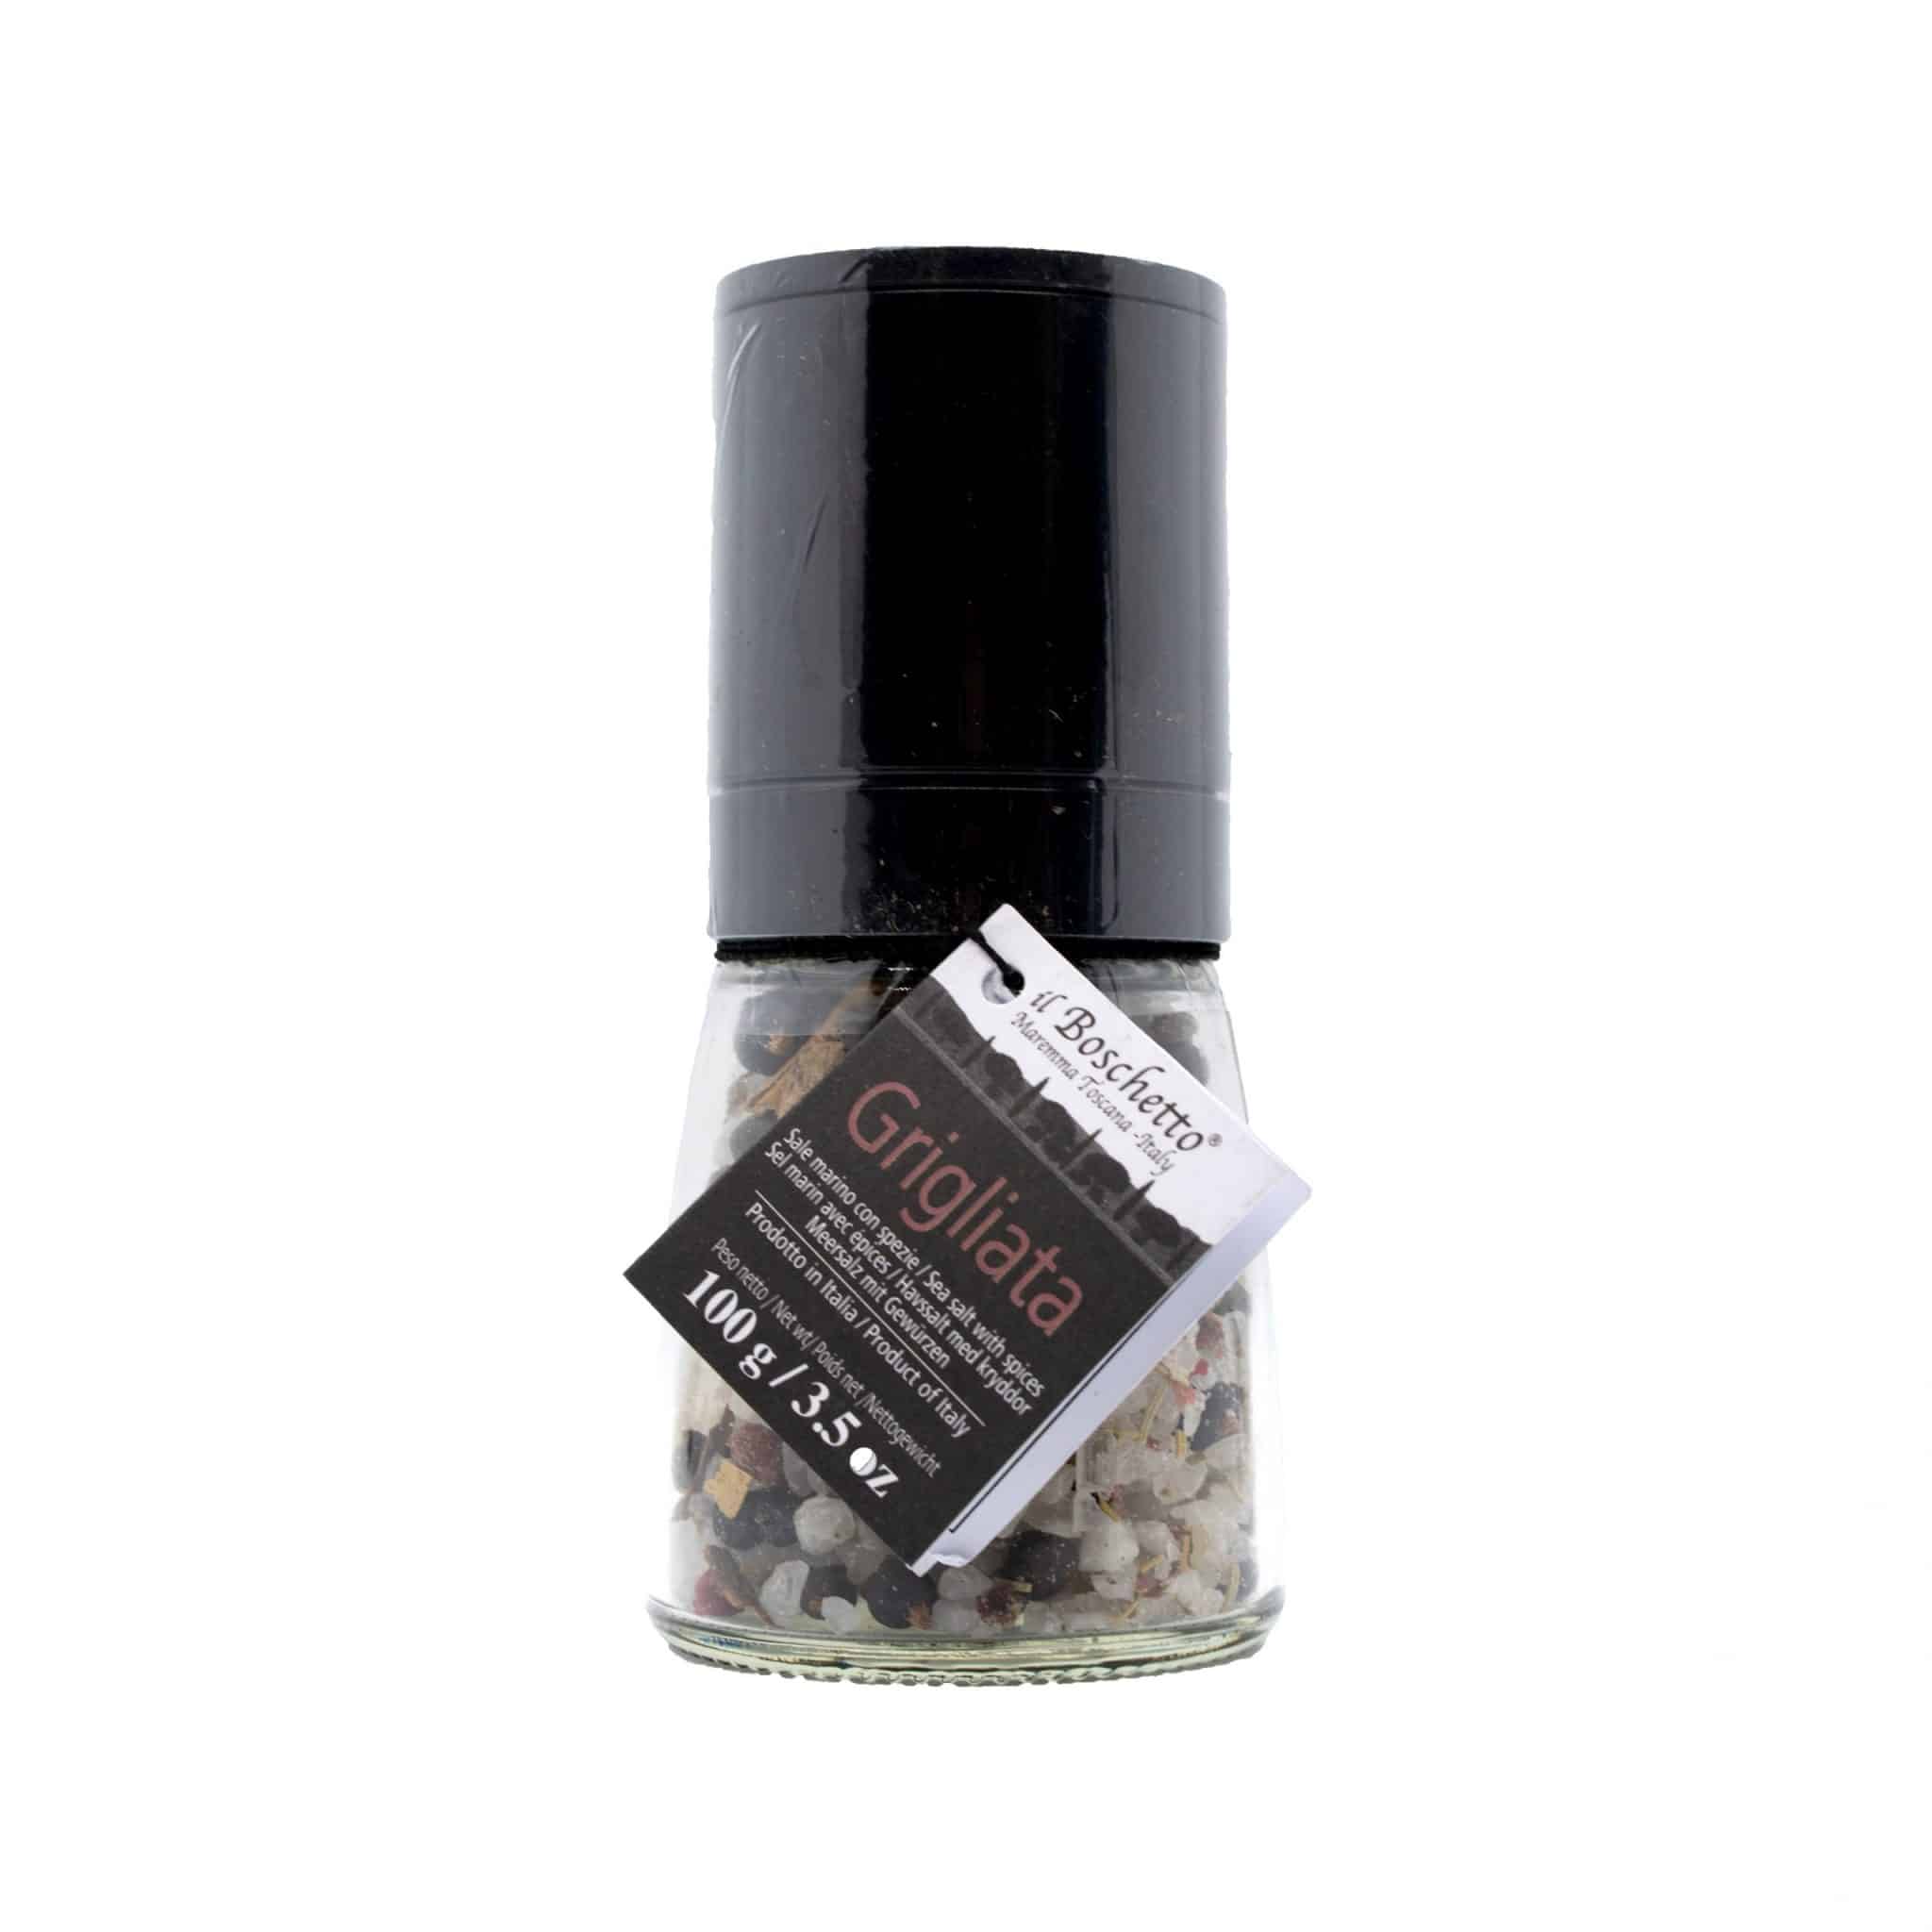 Il Boschetta Sea Salt And Herbs Grinder